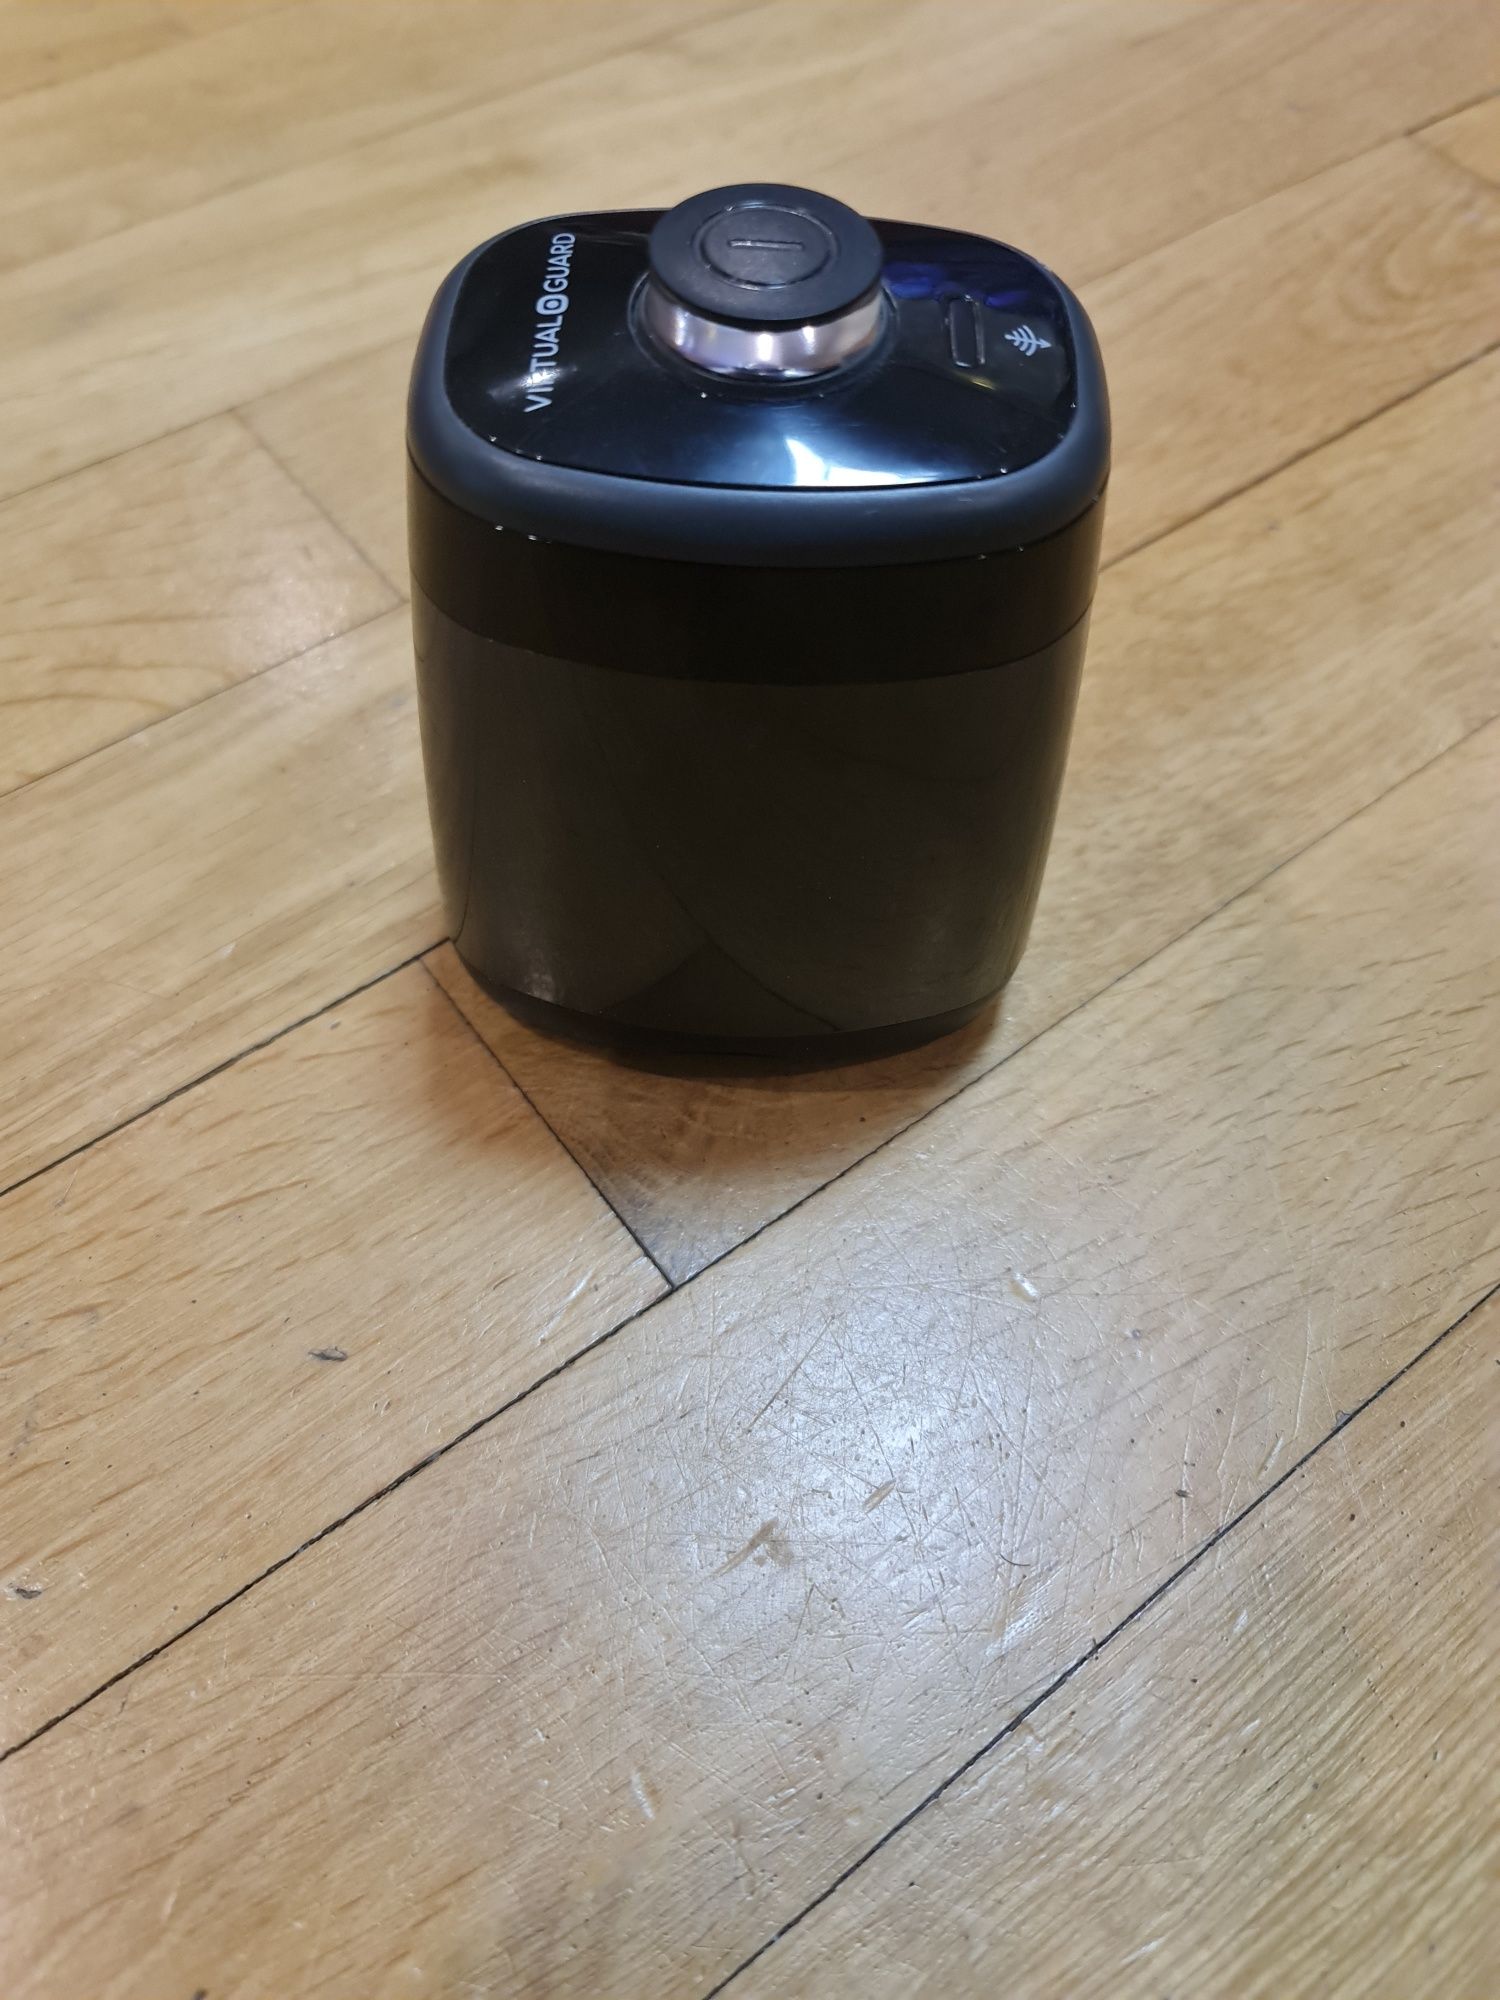 продам запчасти для робот-пылесос Samsung VR20k9350wk/E